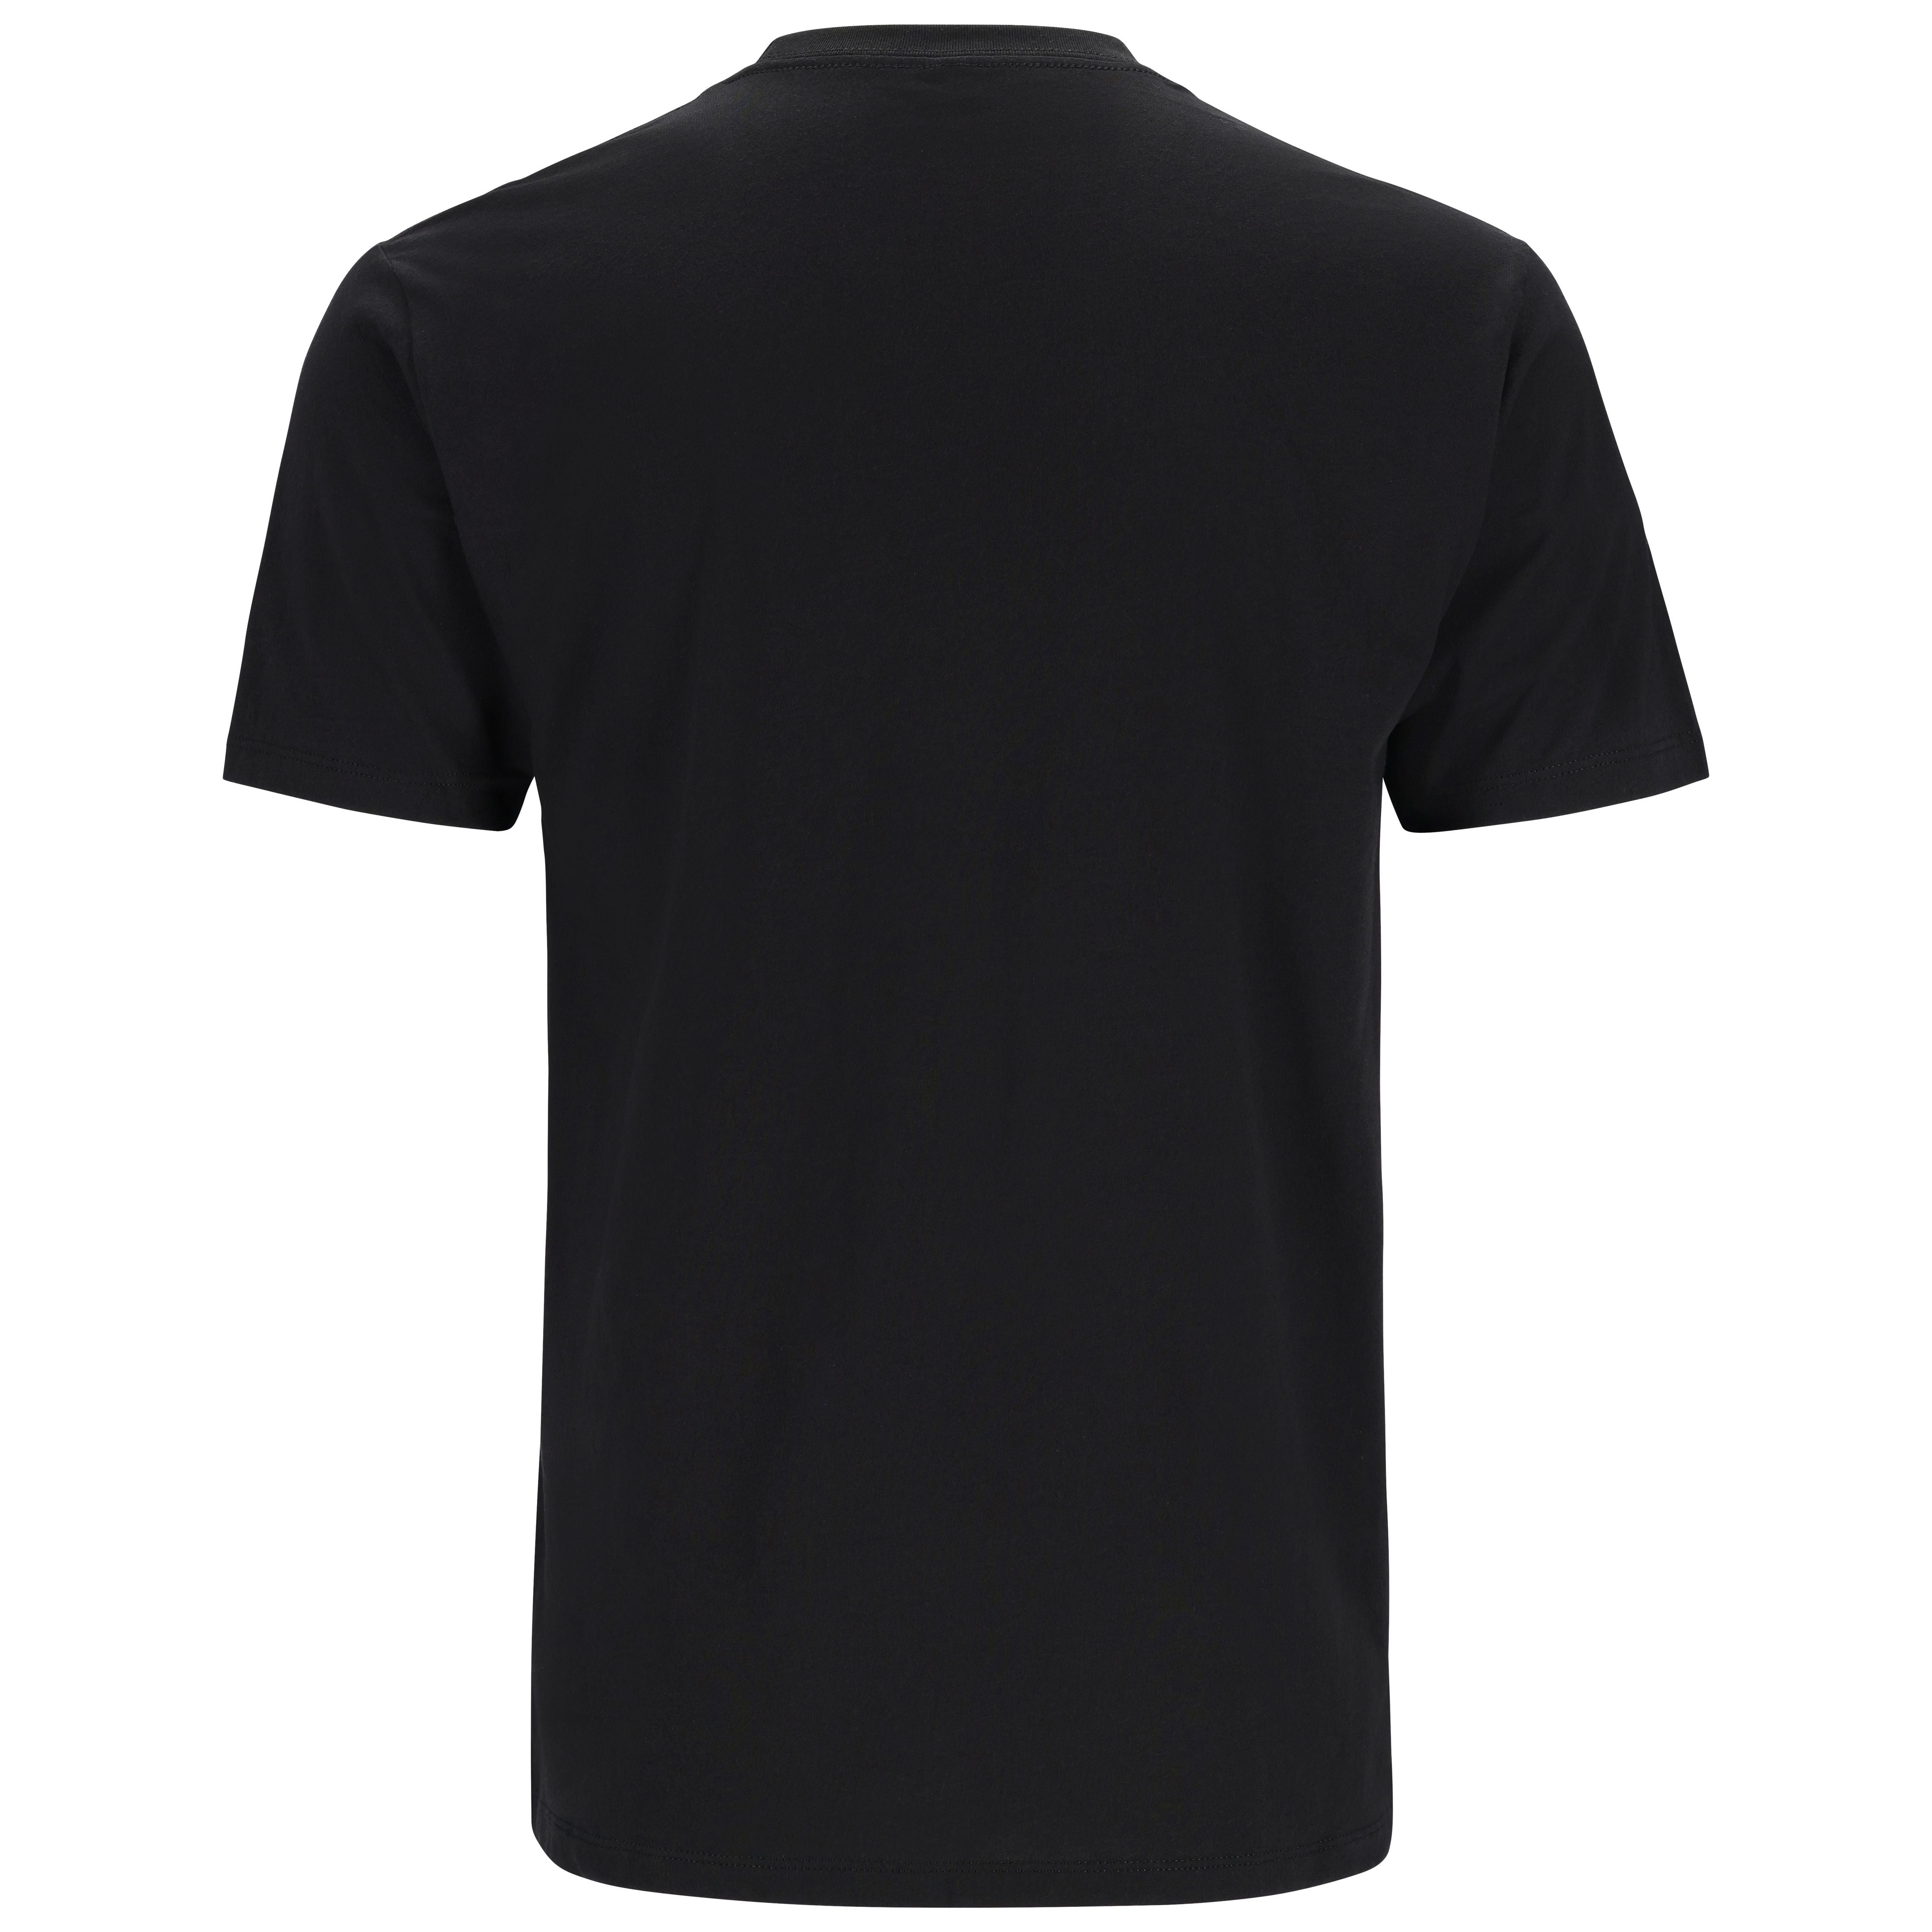 Simms Trout Outline T-Shirt Black Image 02